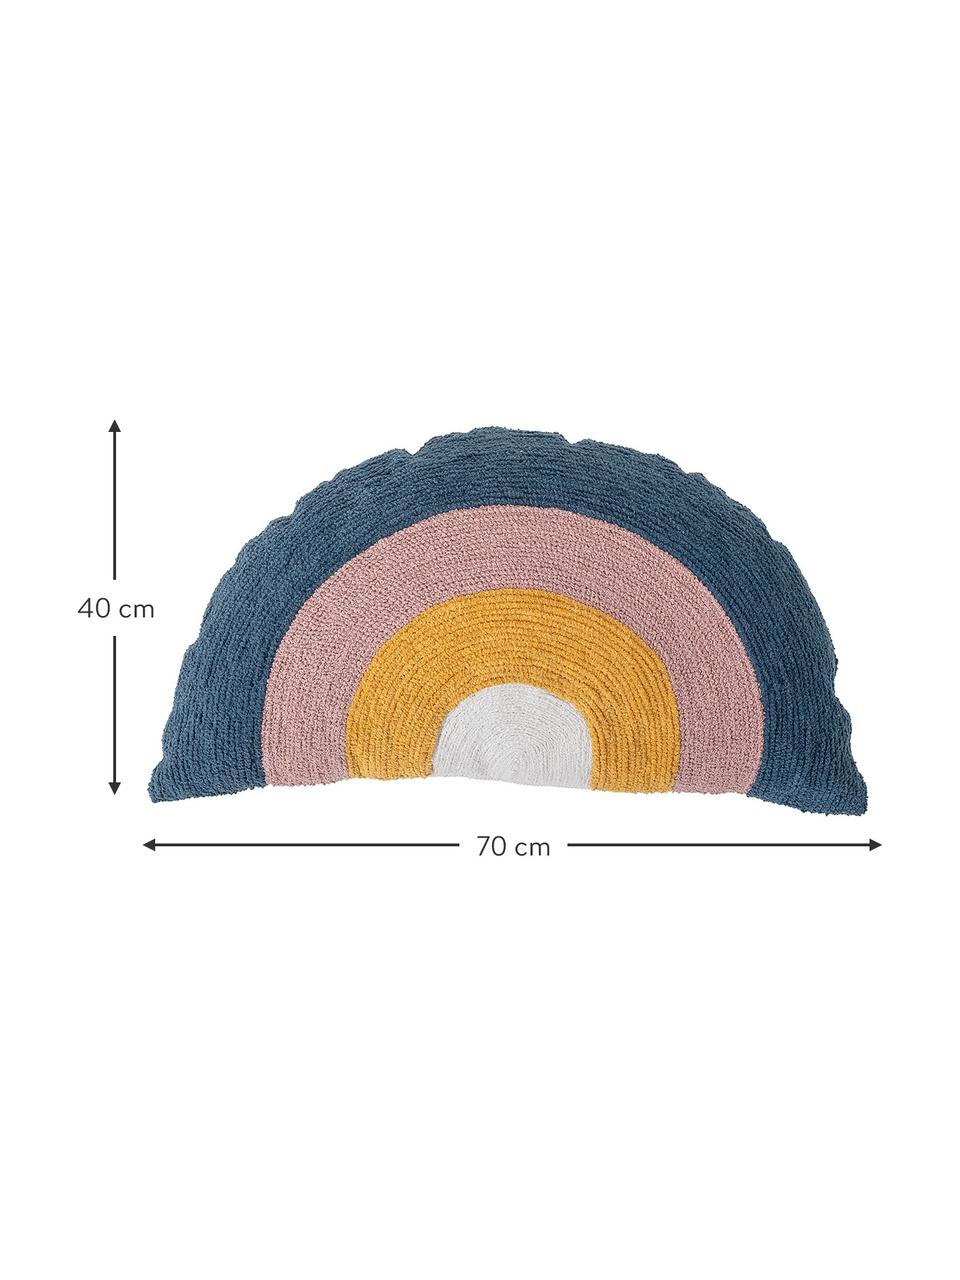 Poduszka Rainbow z wypełnieniem, Tapicerka: bawełna, Wielobarwny, S 70 x D 40 cm